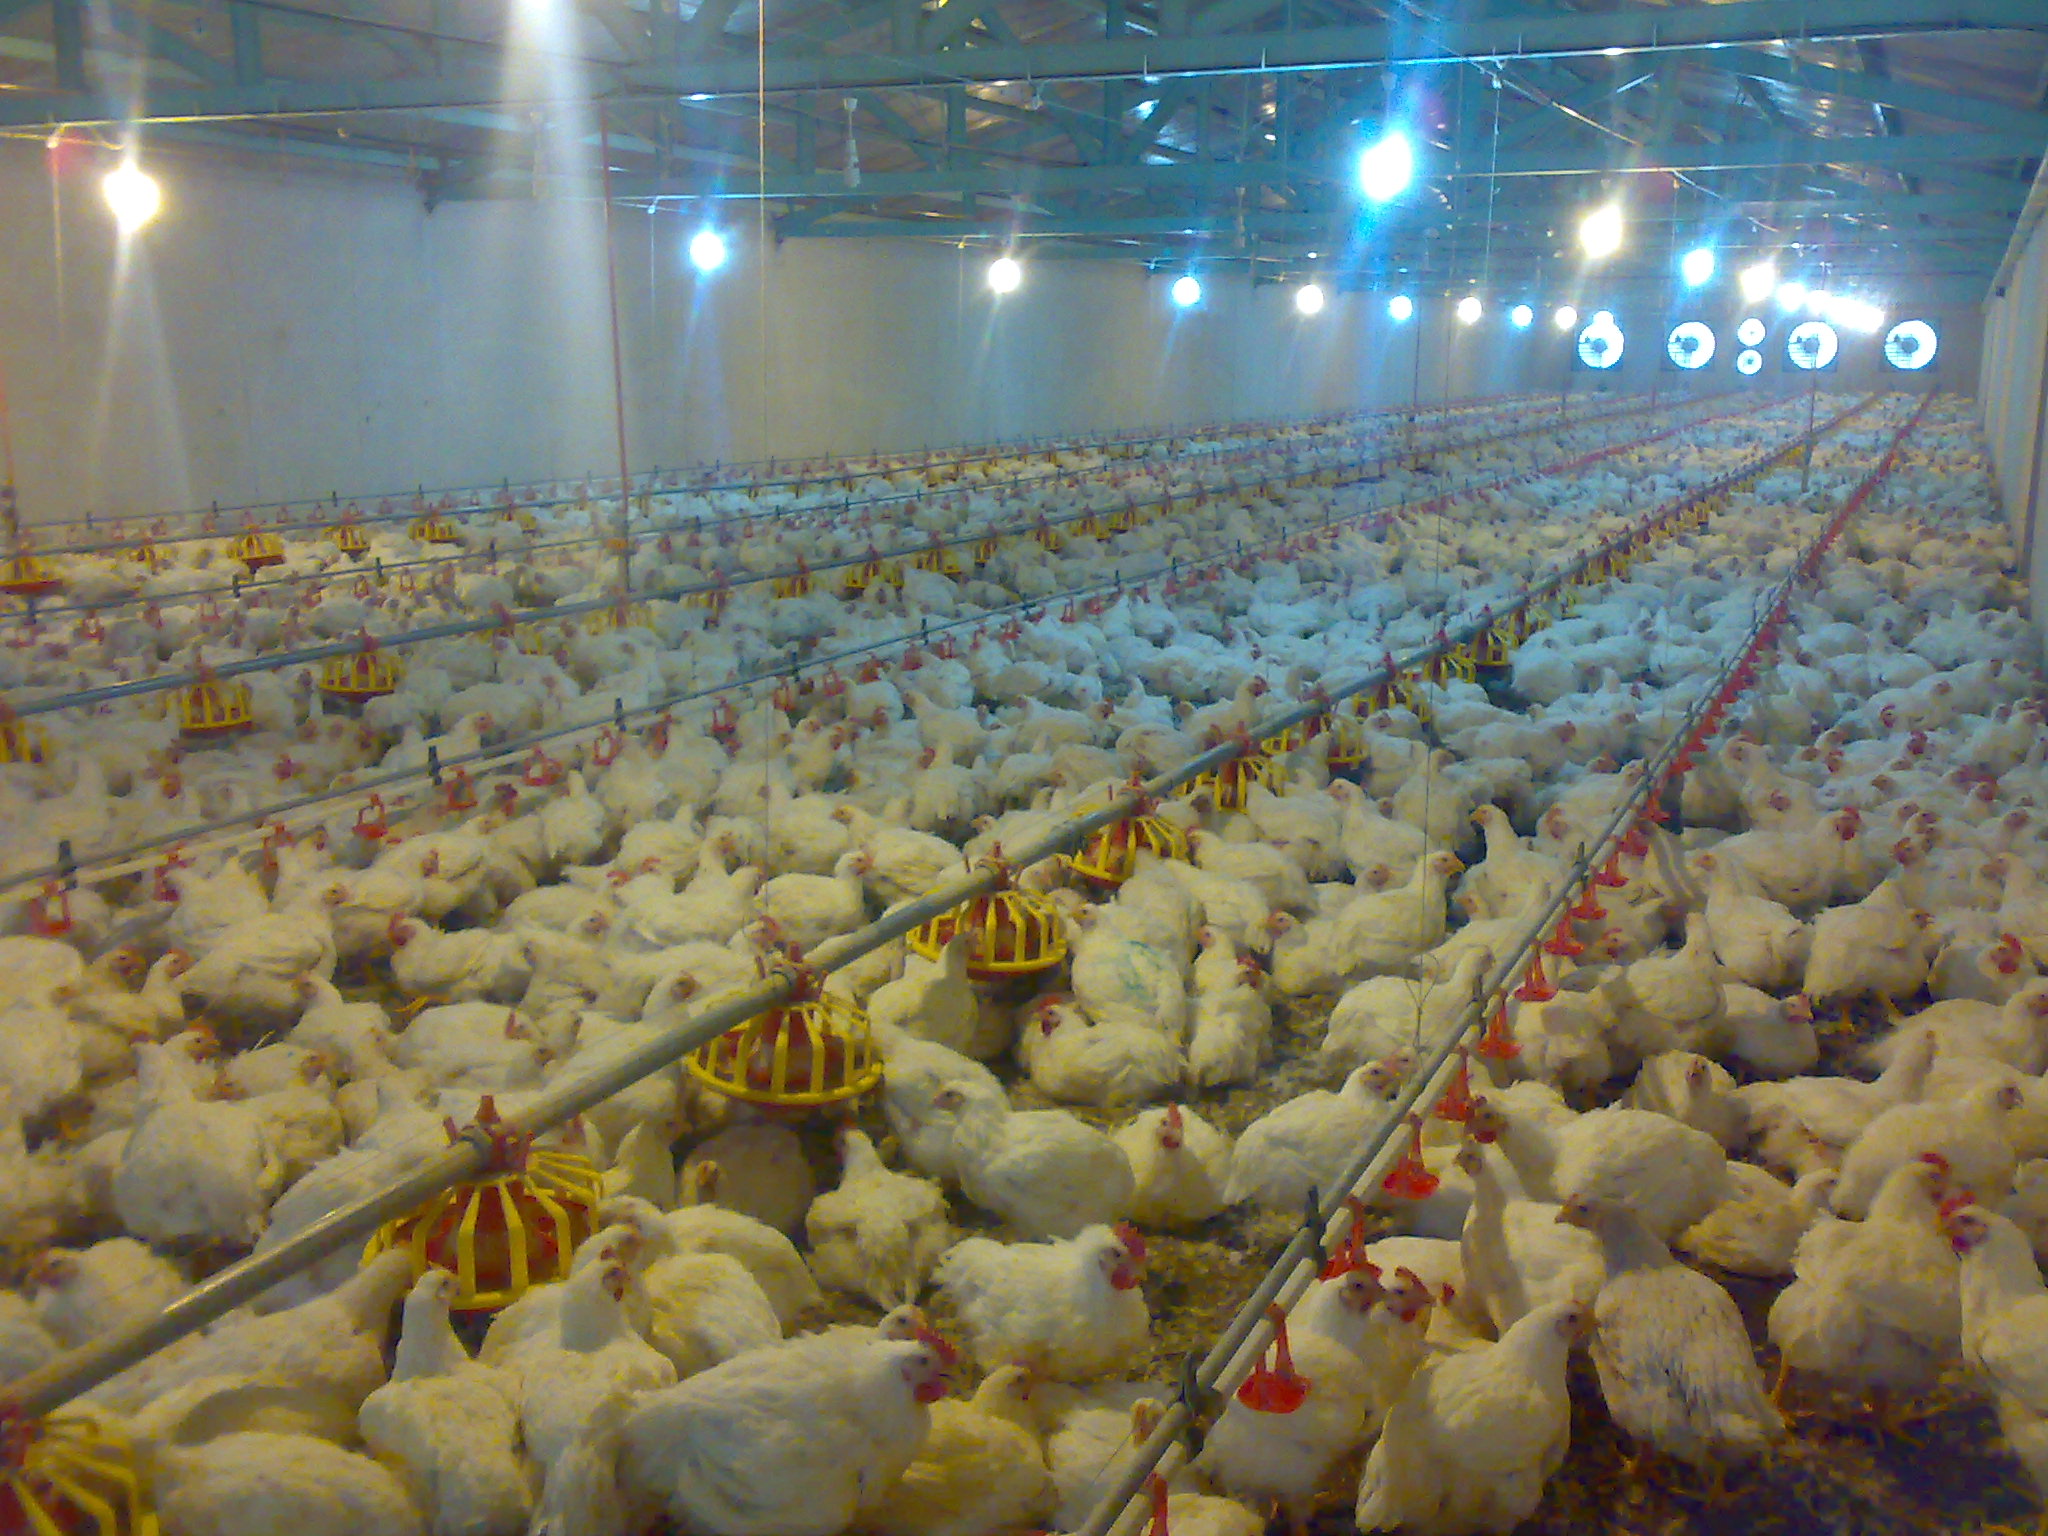 آنفلوانزای پرندگان صنعت گوشت آمریکا را مختل کرد/ ابتلای 10 درصد مرغ تخمگذار آمریکا به ویروس